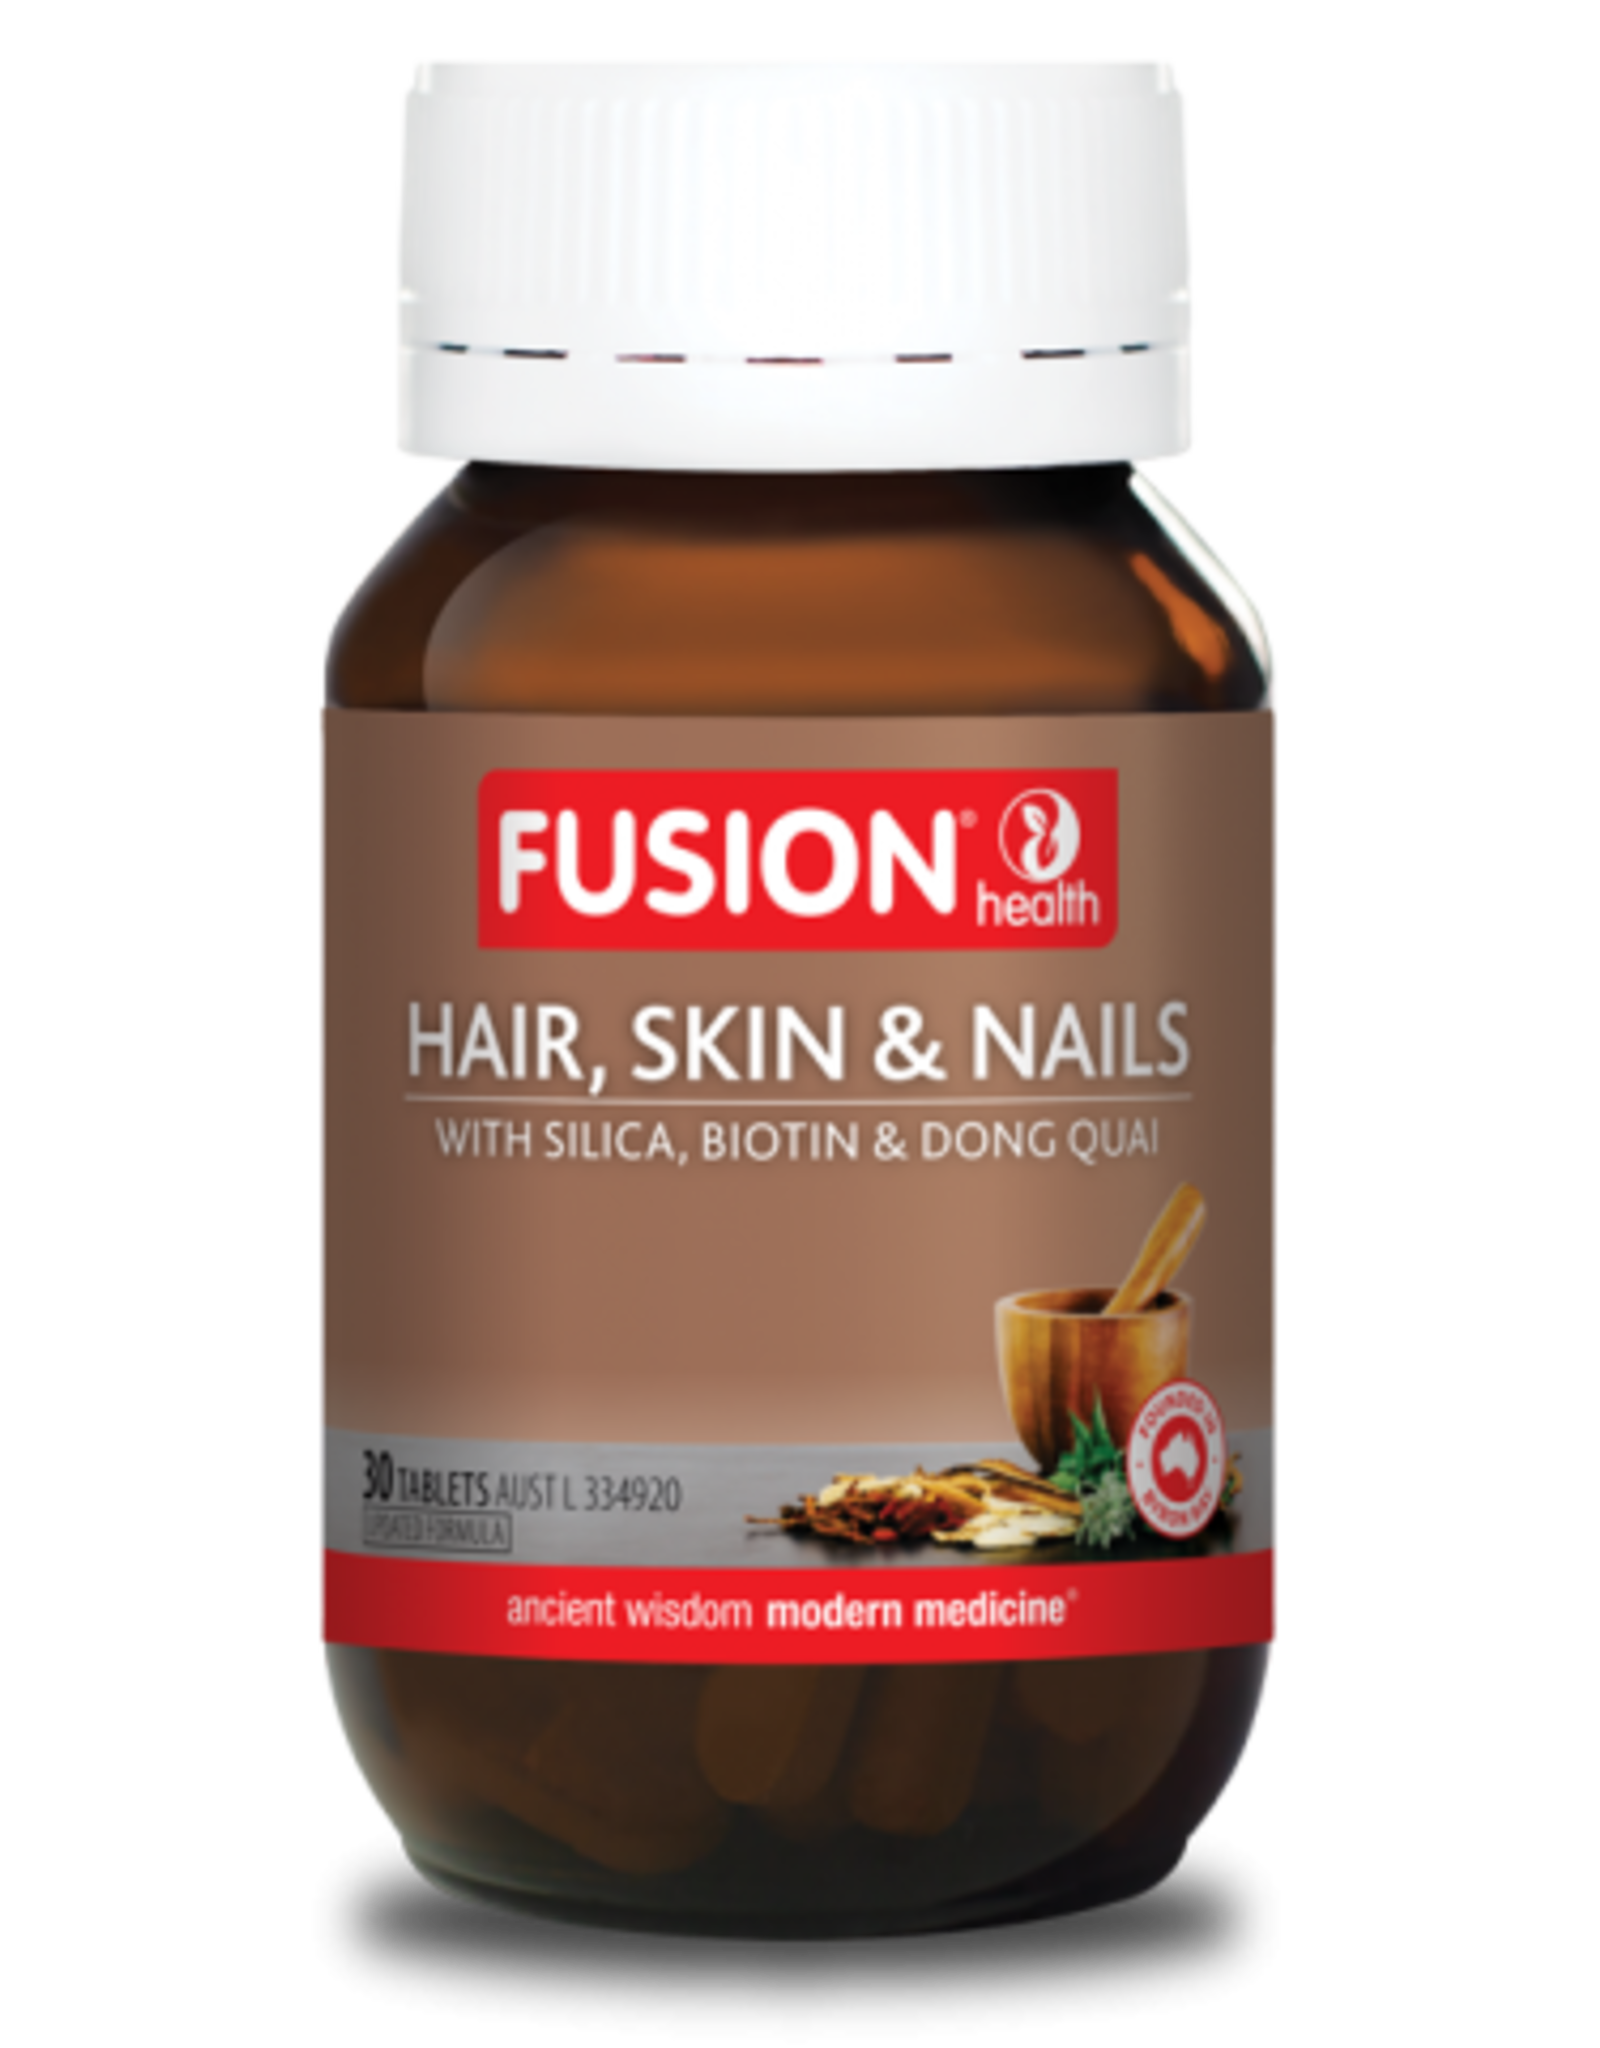 Fusion Hair, Skin & Nails